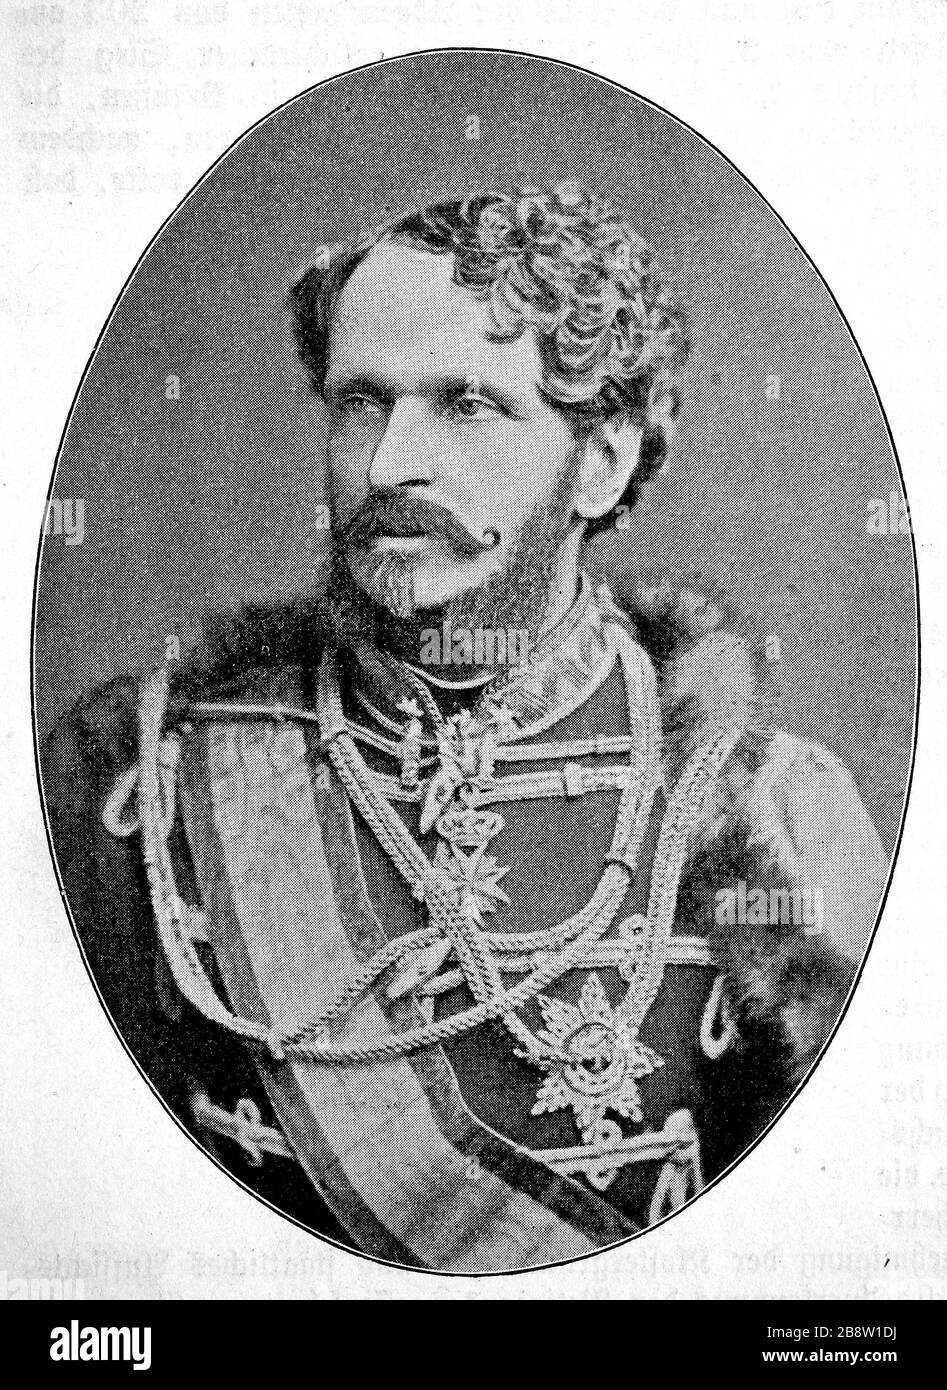 Gyula, Julius, Graf Andrássy von Csík-Szent-Kiraly und Kraszna-Horka der ältere, 8. März 1823 - 8. Februar 1890, war ein ungarischer Magnat, der gegen das Habsburgerreich rebellierte und ein führender Politiker in der Zweimonarchie Österreich/Gyula, Julius, Graf Andrássy von Csík-Szent-Kiraly und Kraszna-Horka der Ältere, 8. März 1823 - 8. Februar 1890, war ein ungarischer Magnat, Aufsteller gegen Habsburg und fühender Politiker in der österreichisch-ungarischen Doppelmonarchie, historisch, digital verbesserte Wiedergabe eines Originals aus dem 19. Jahrhundert / Digitale Produktion einer Origina Stockfoto